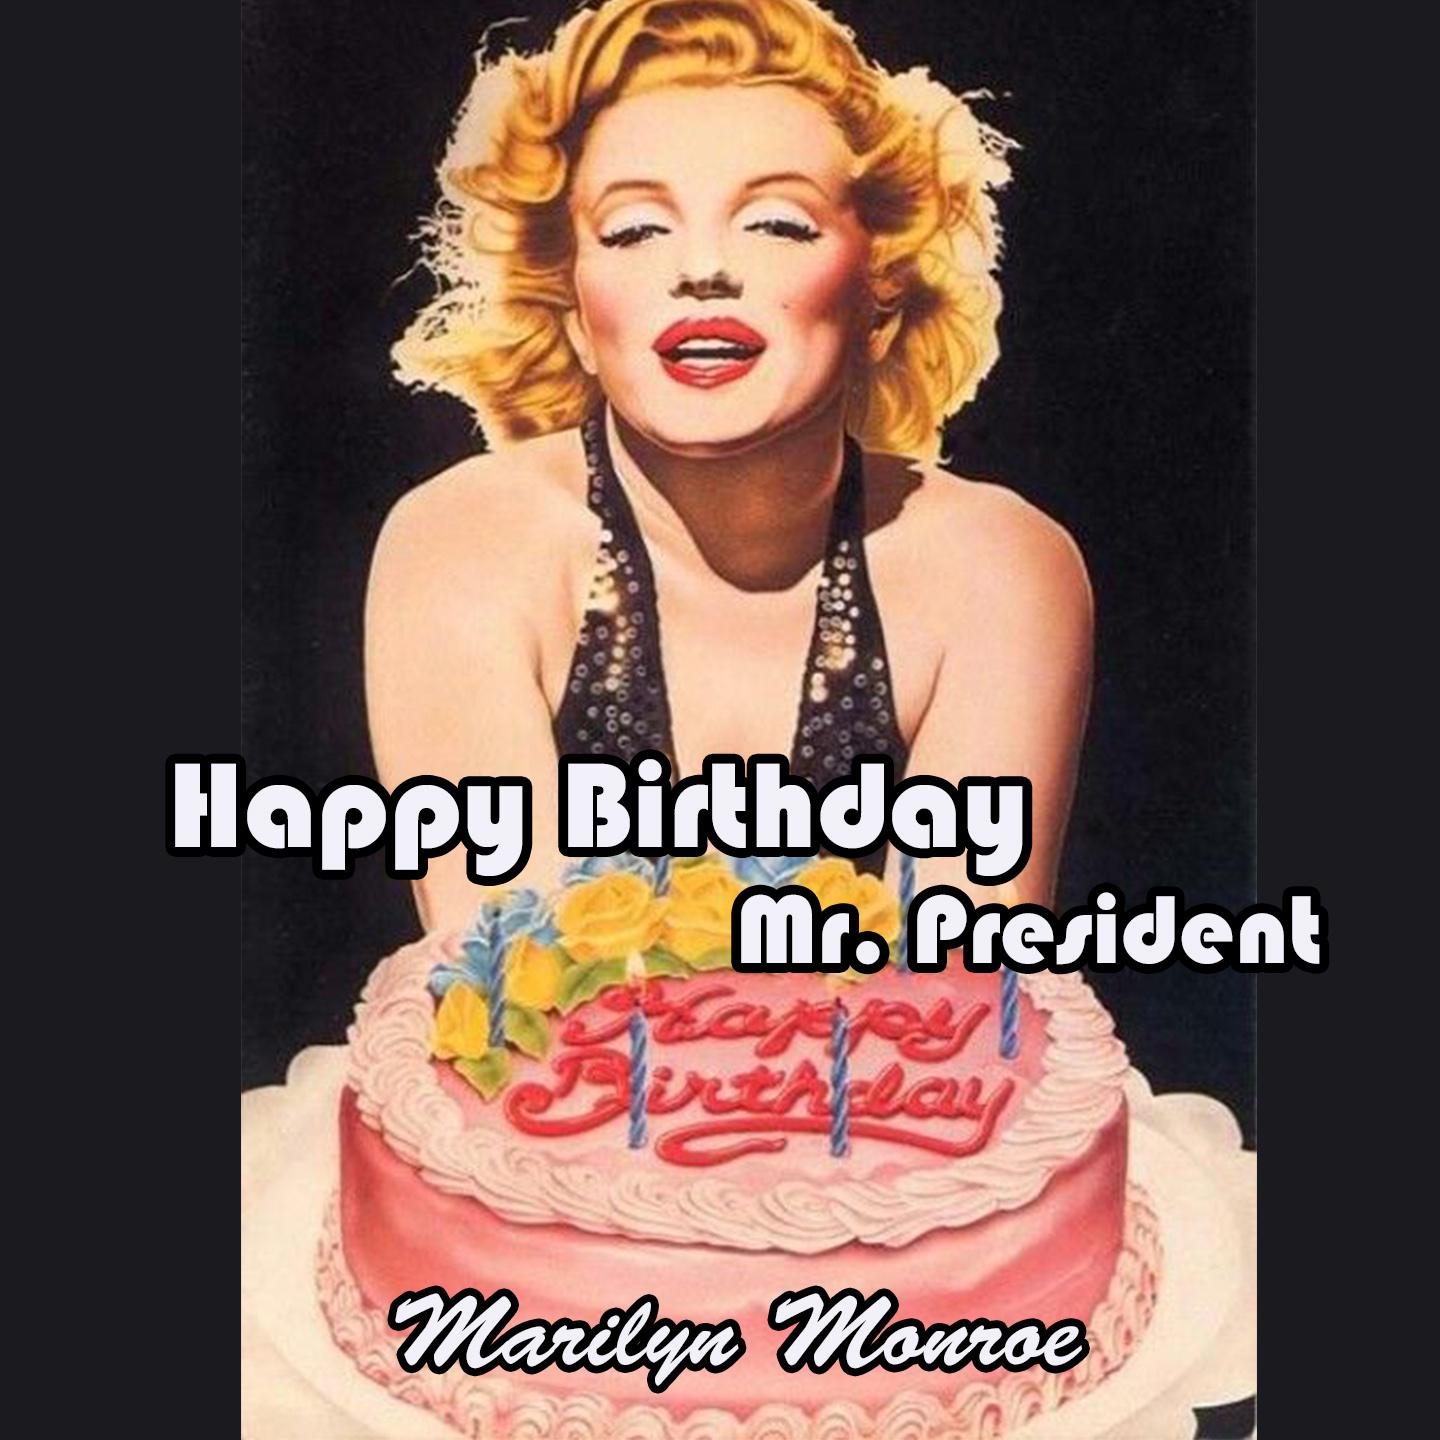 Happy Birthday Mr. President.